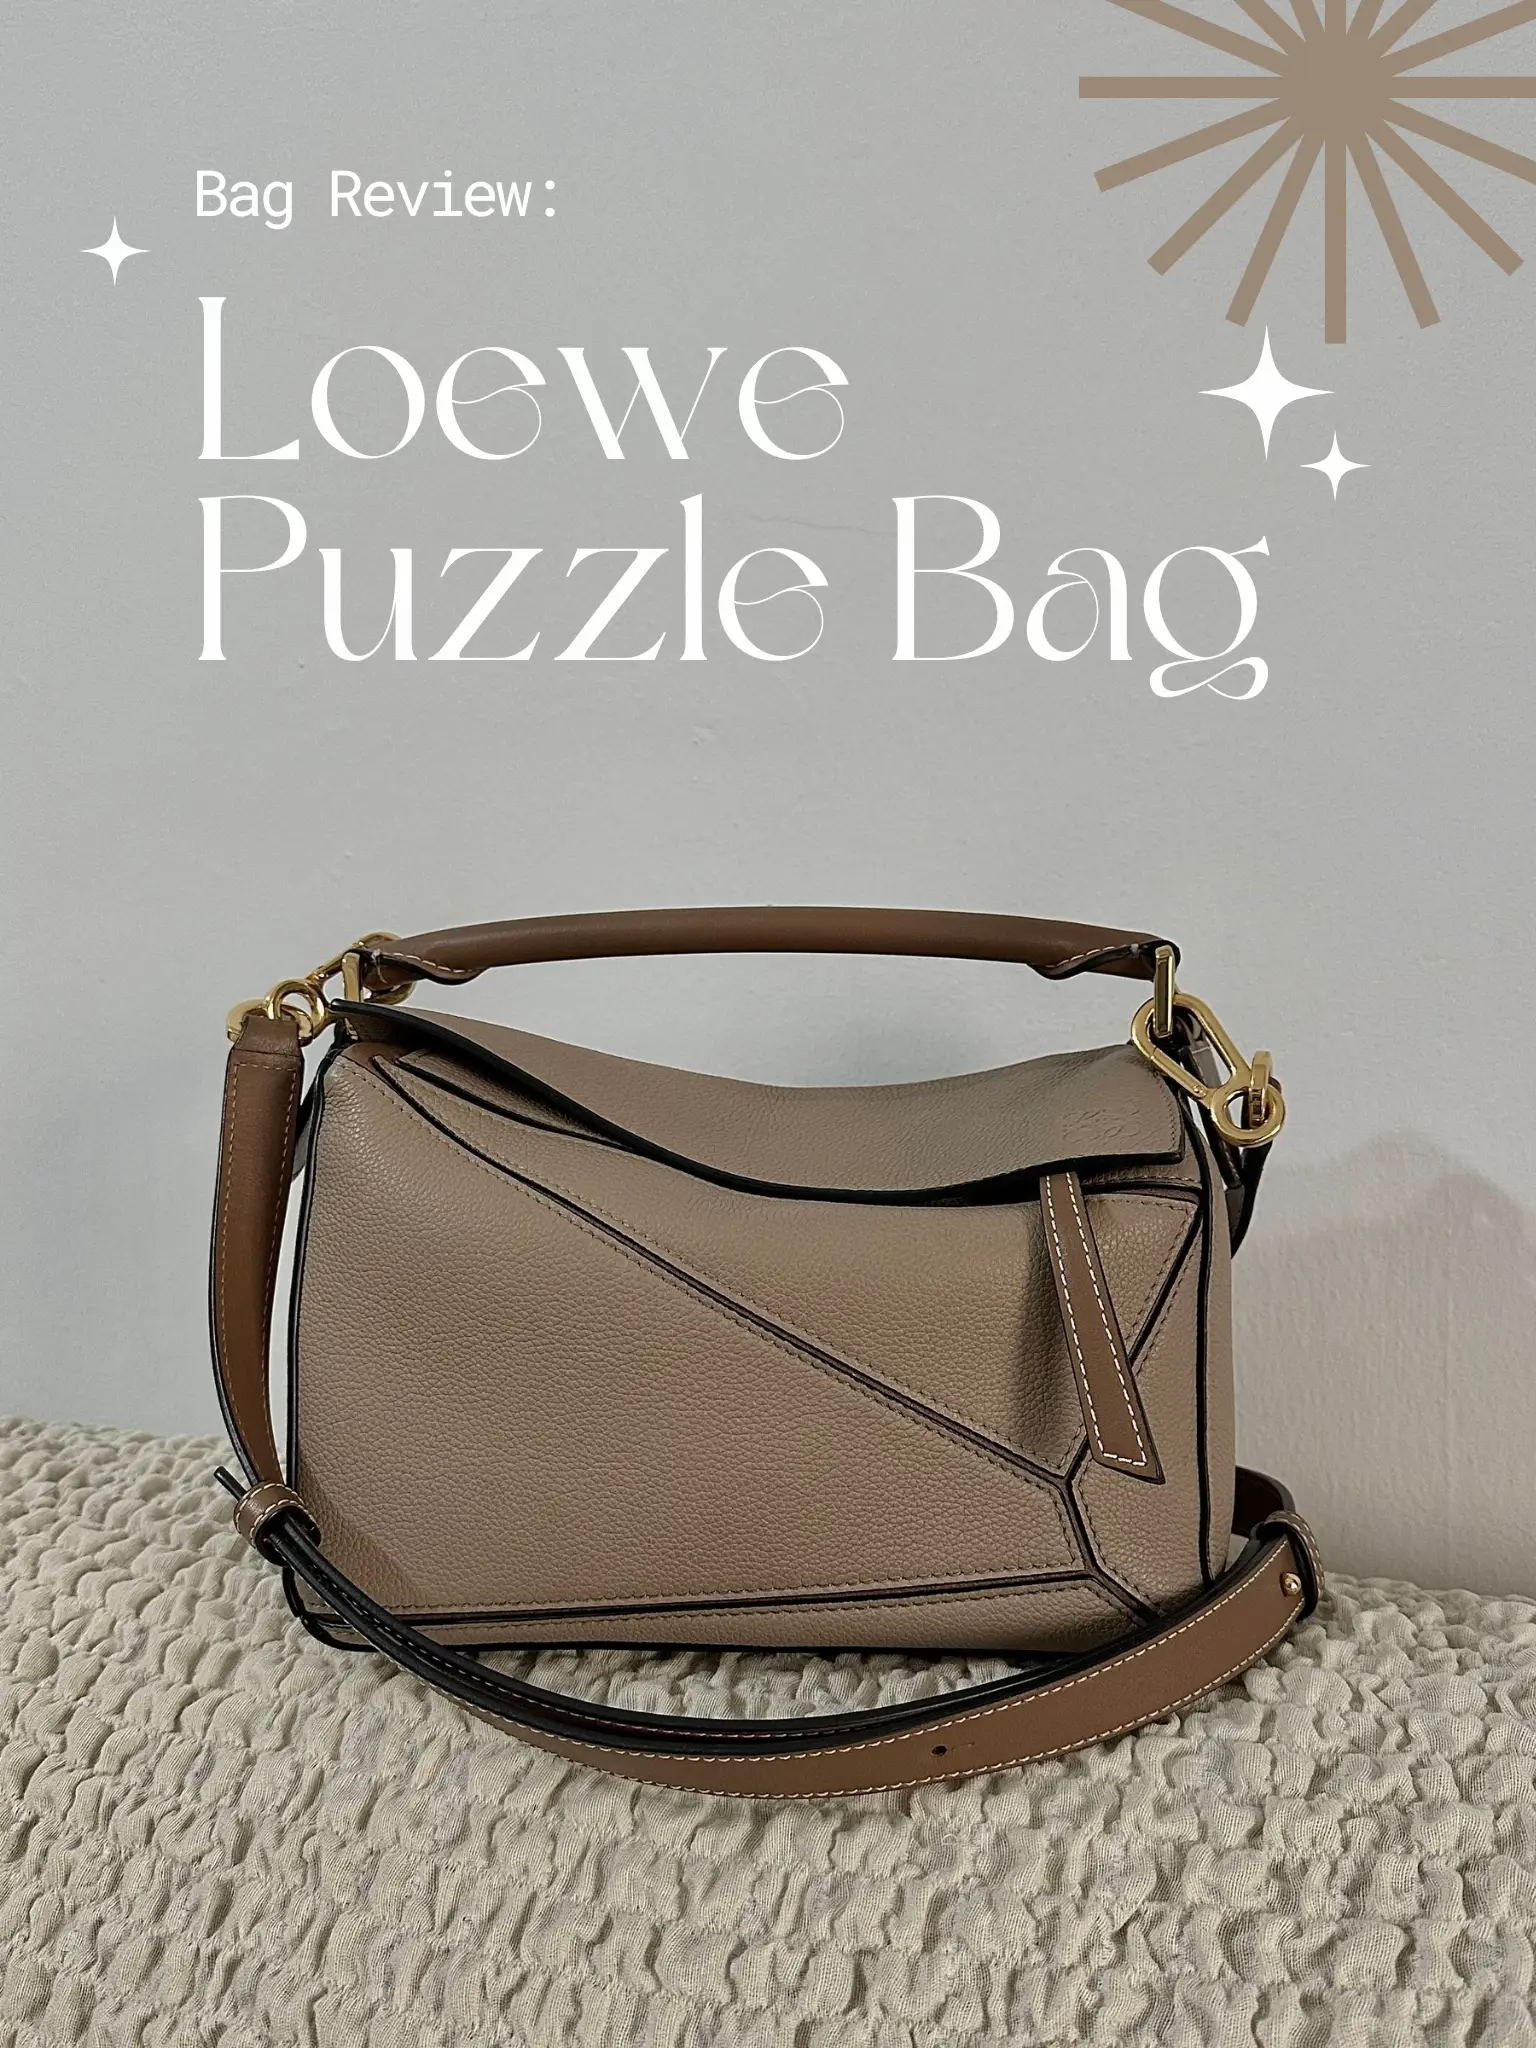 Loewe Puzzle Bag Medium & Small Comparison 